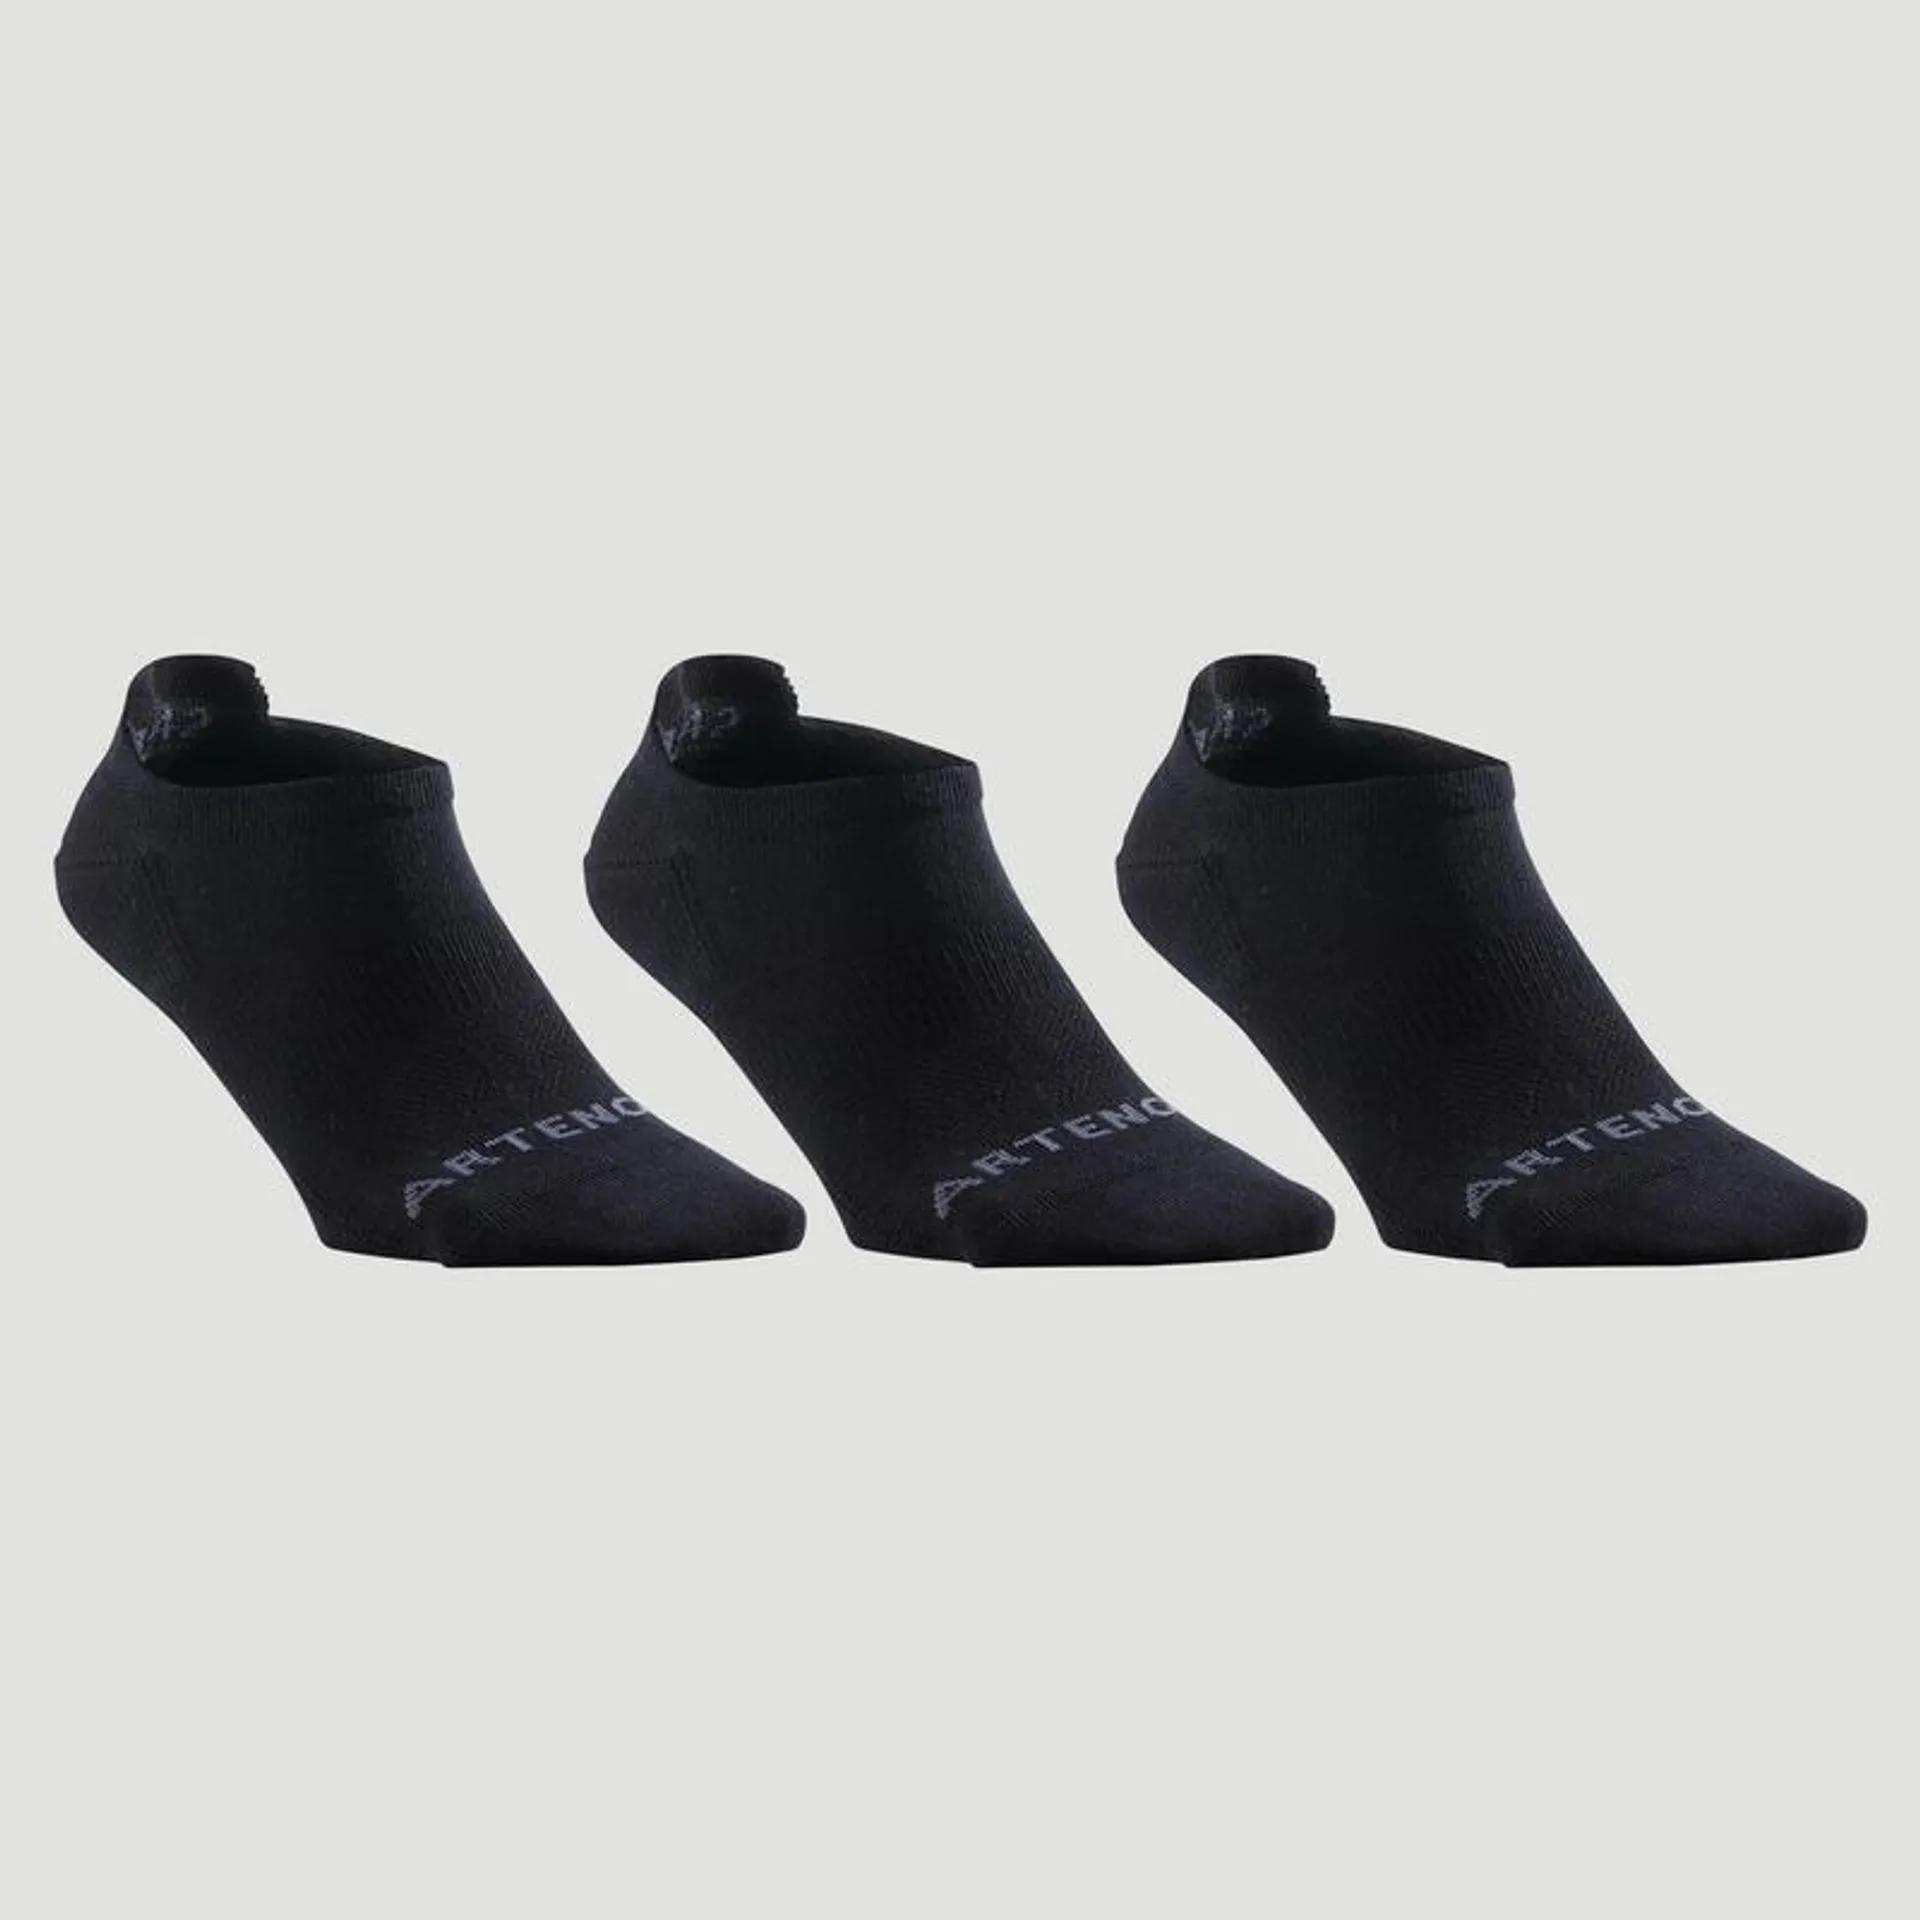 Nízké tenisové ponožky RS160 3 páry černé